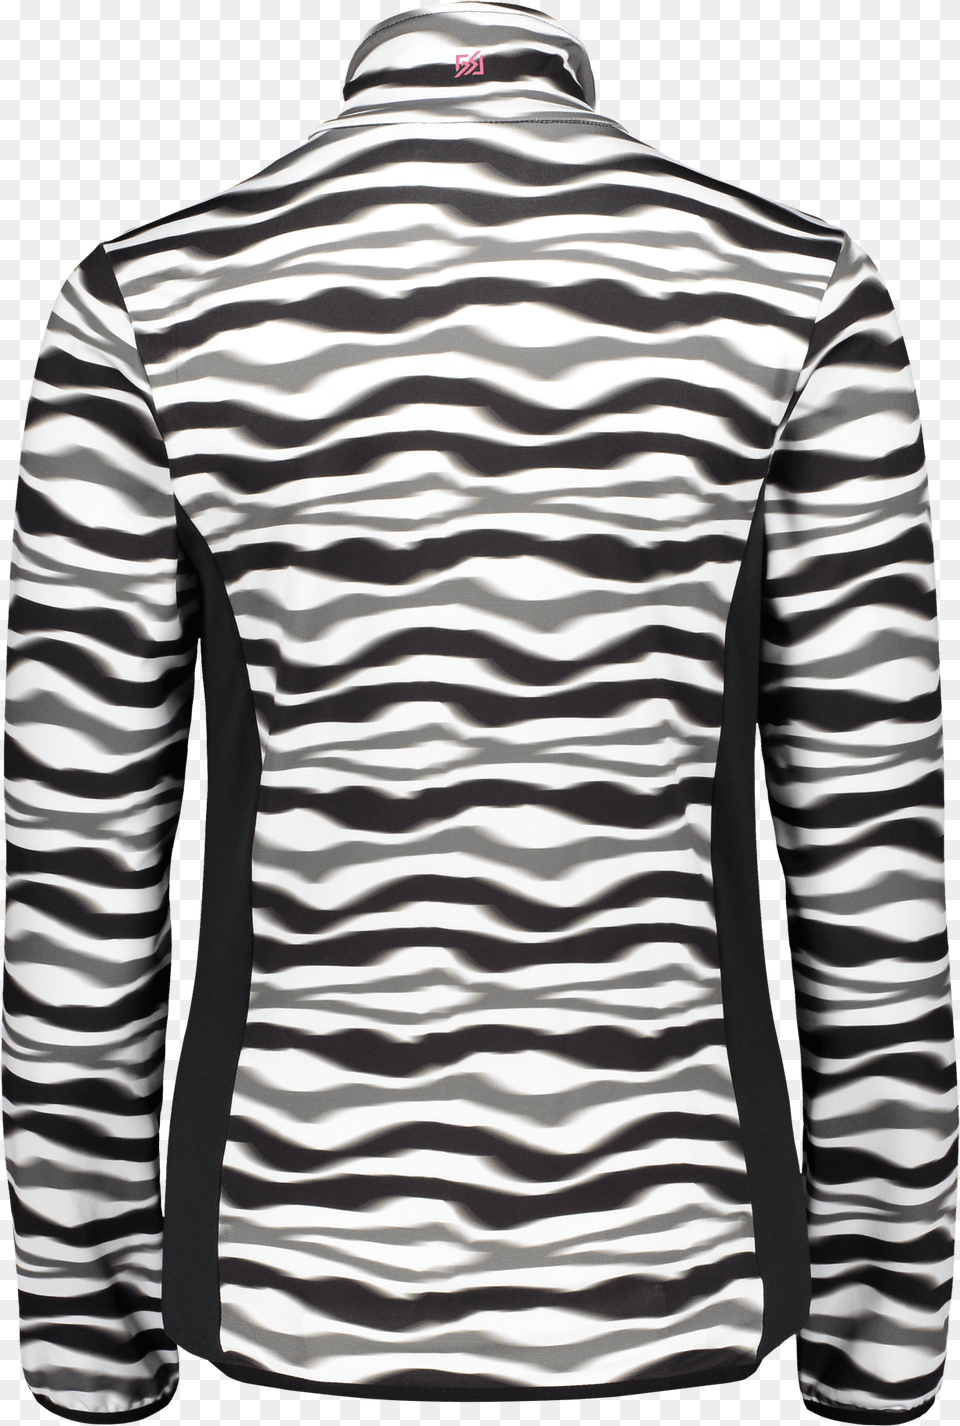 Catmandoo Taipan Light Jacket Zebra, Clothing, Long Sleeve, Sleeve, Shirt Png Image